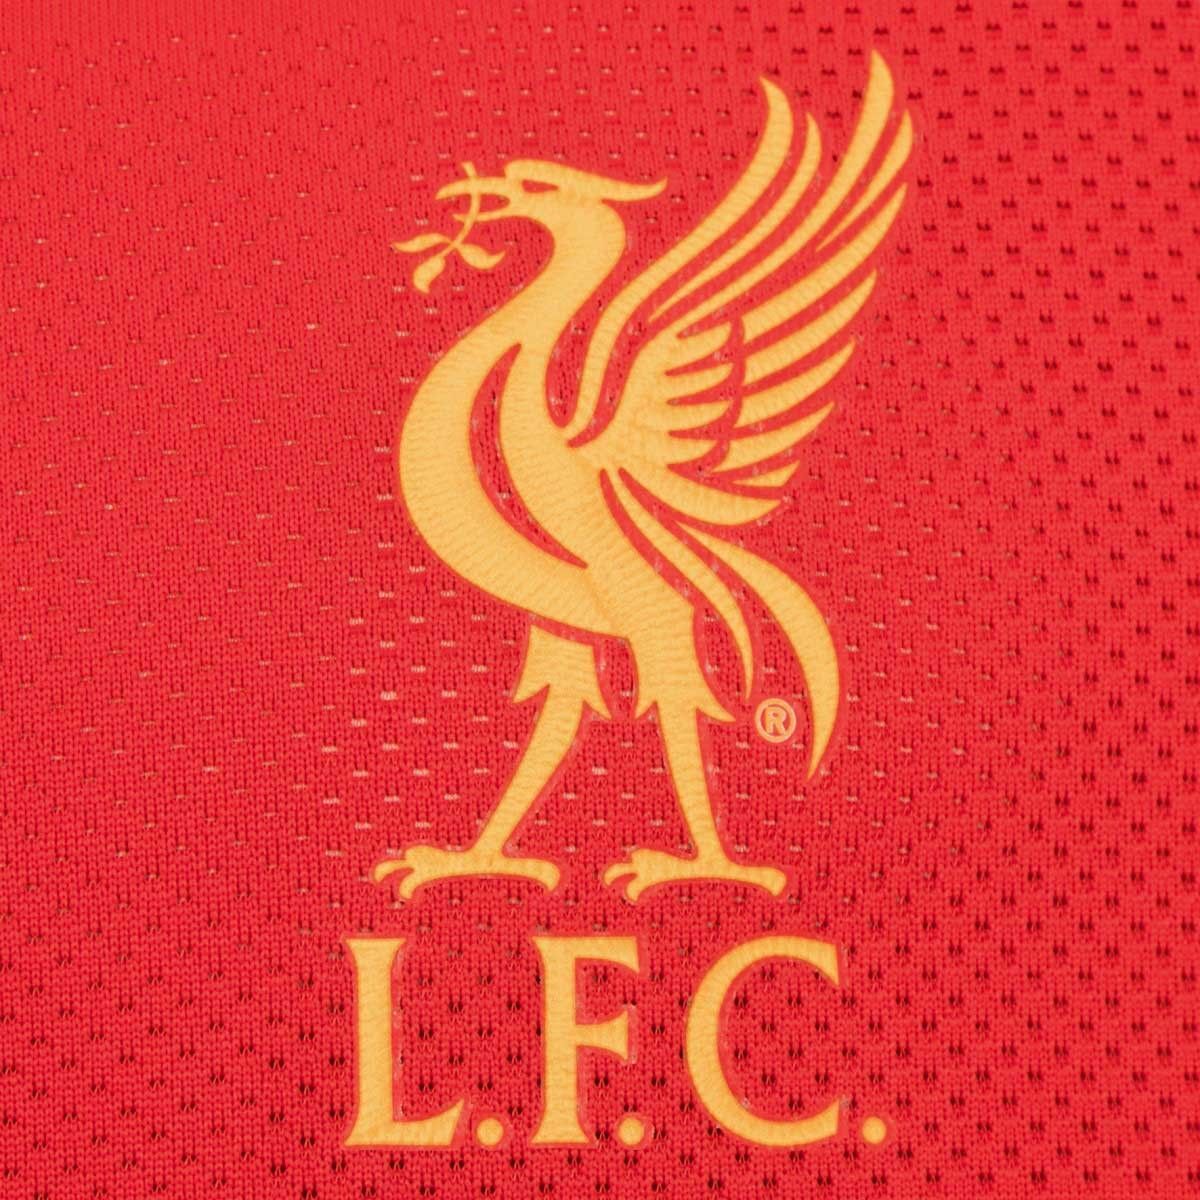 Liverpool FC thuisshirt seizoen 2016/2017